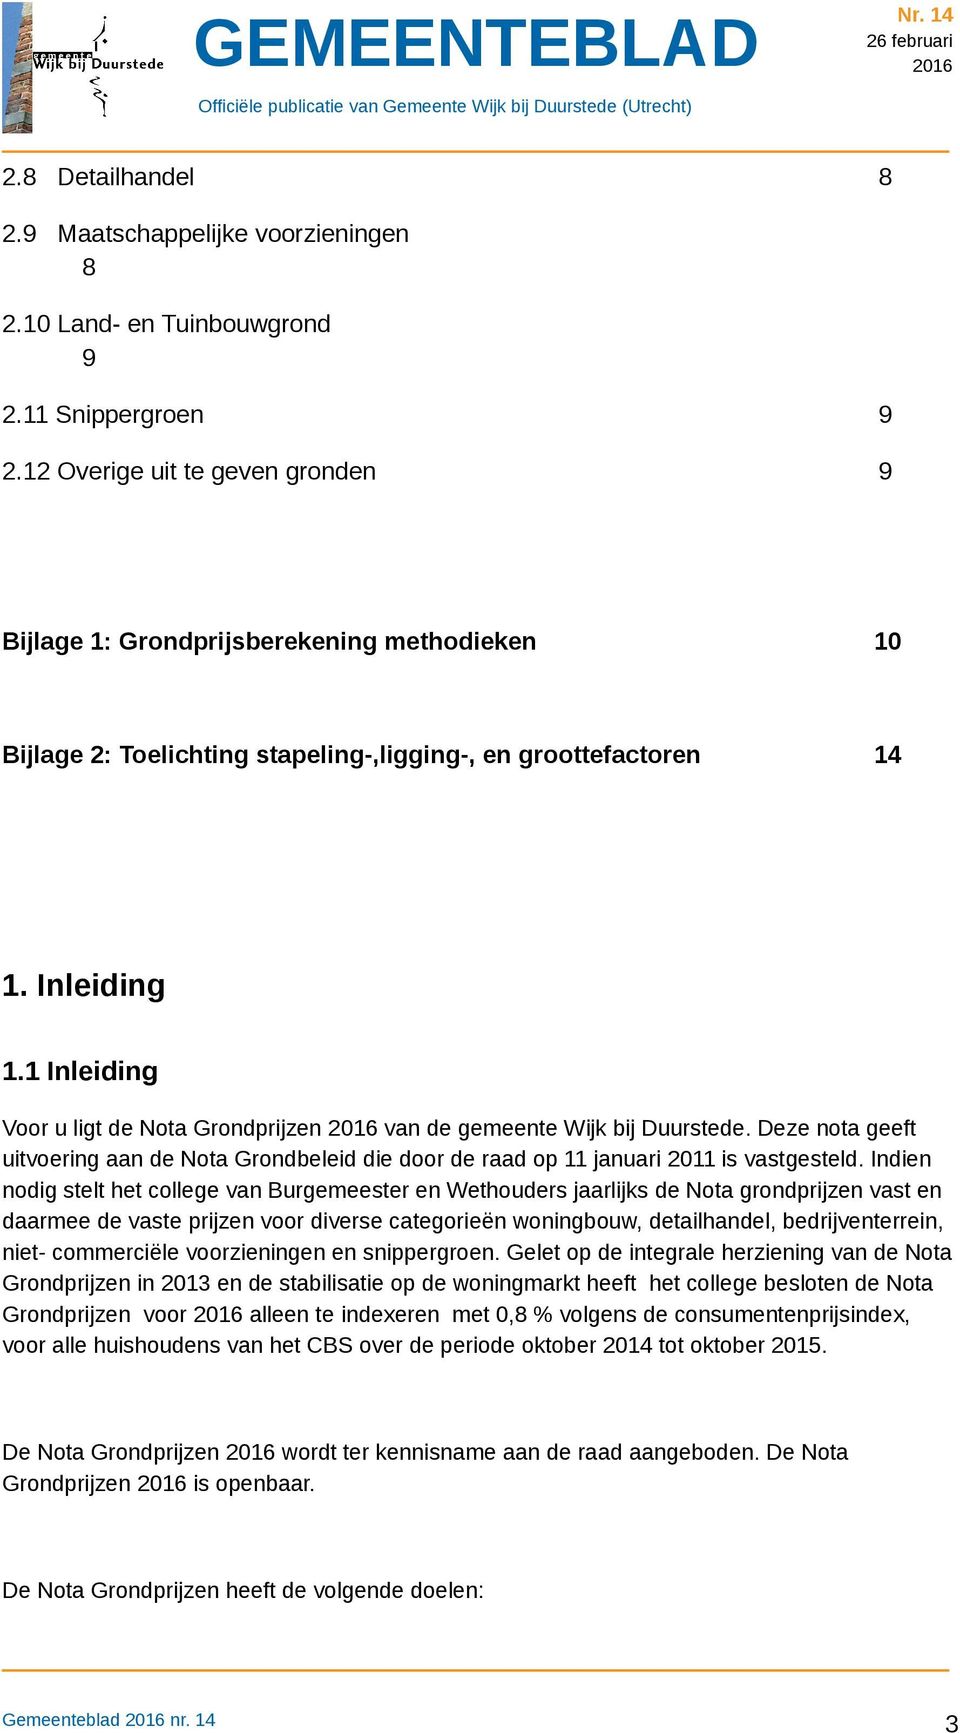 1 Inleiding Voor u ligt de Nota Grondprijzen van de gemeente Wijk bij Duurstede. Deze nota geeft uitvoering aan de Nota Grondbeleid die door de raad op 11 januari 2011 is vastgesteld.